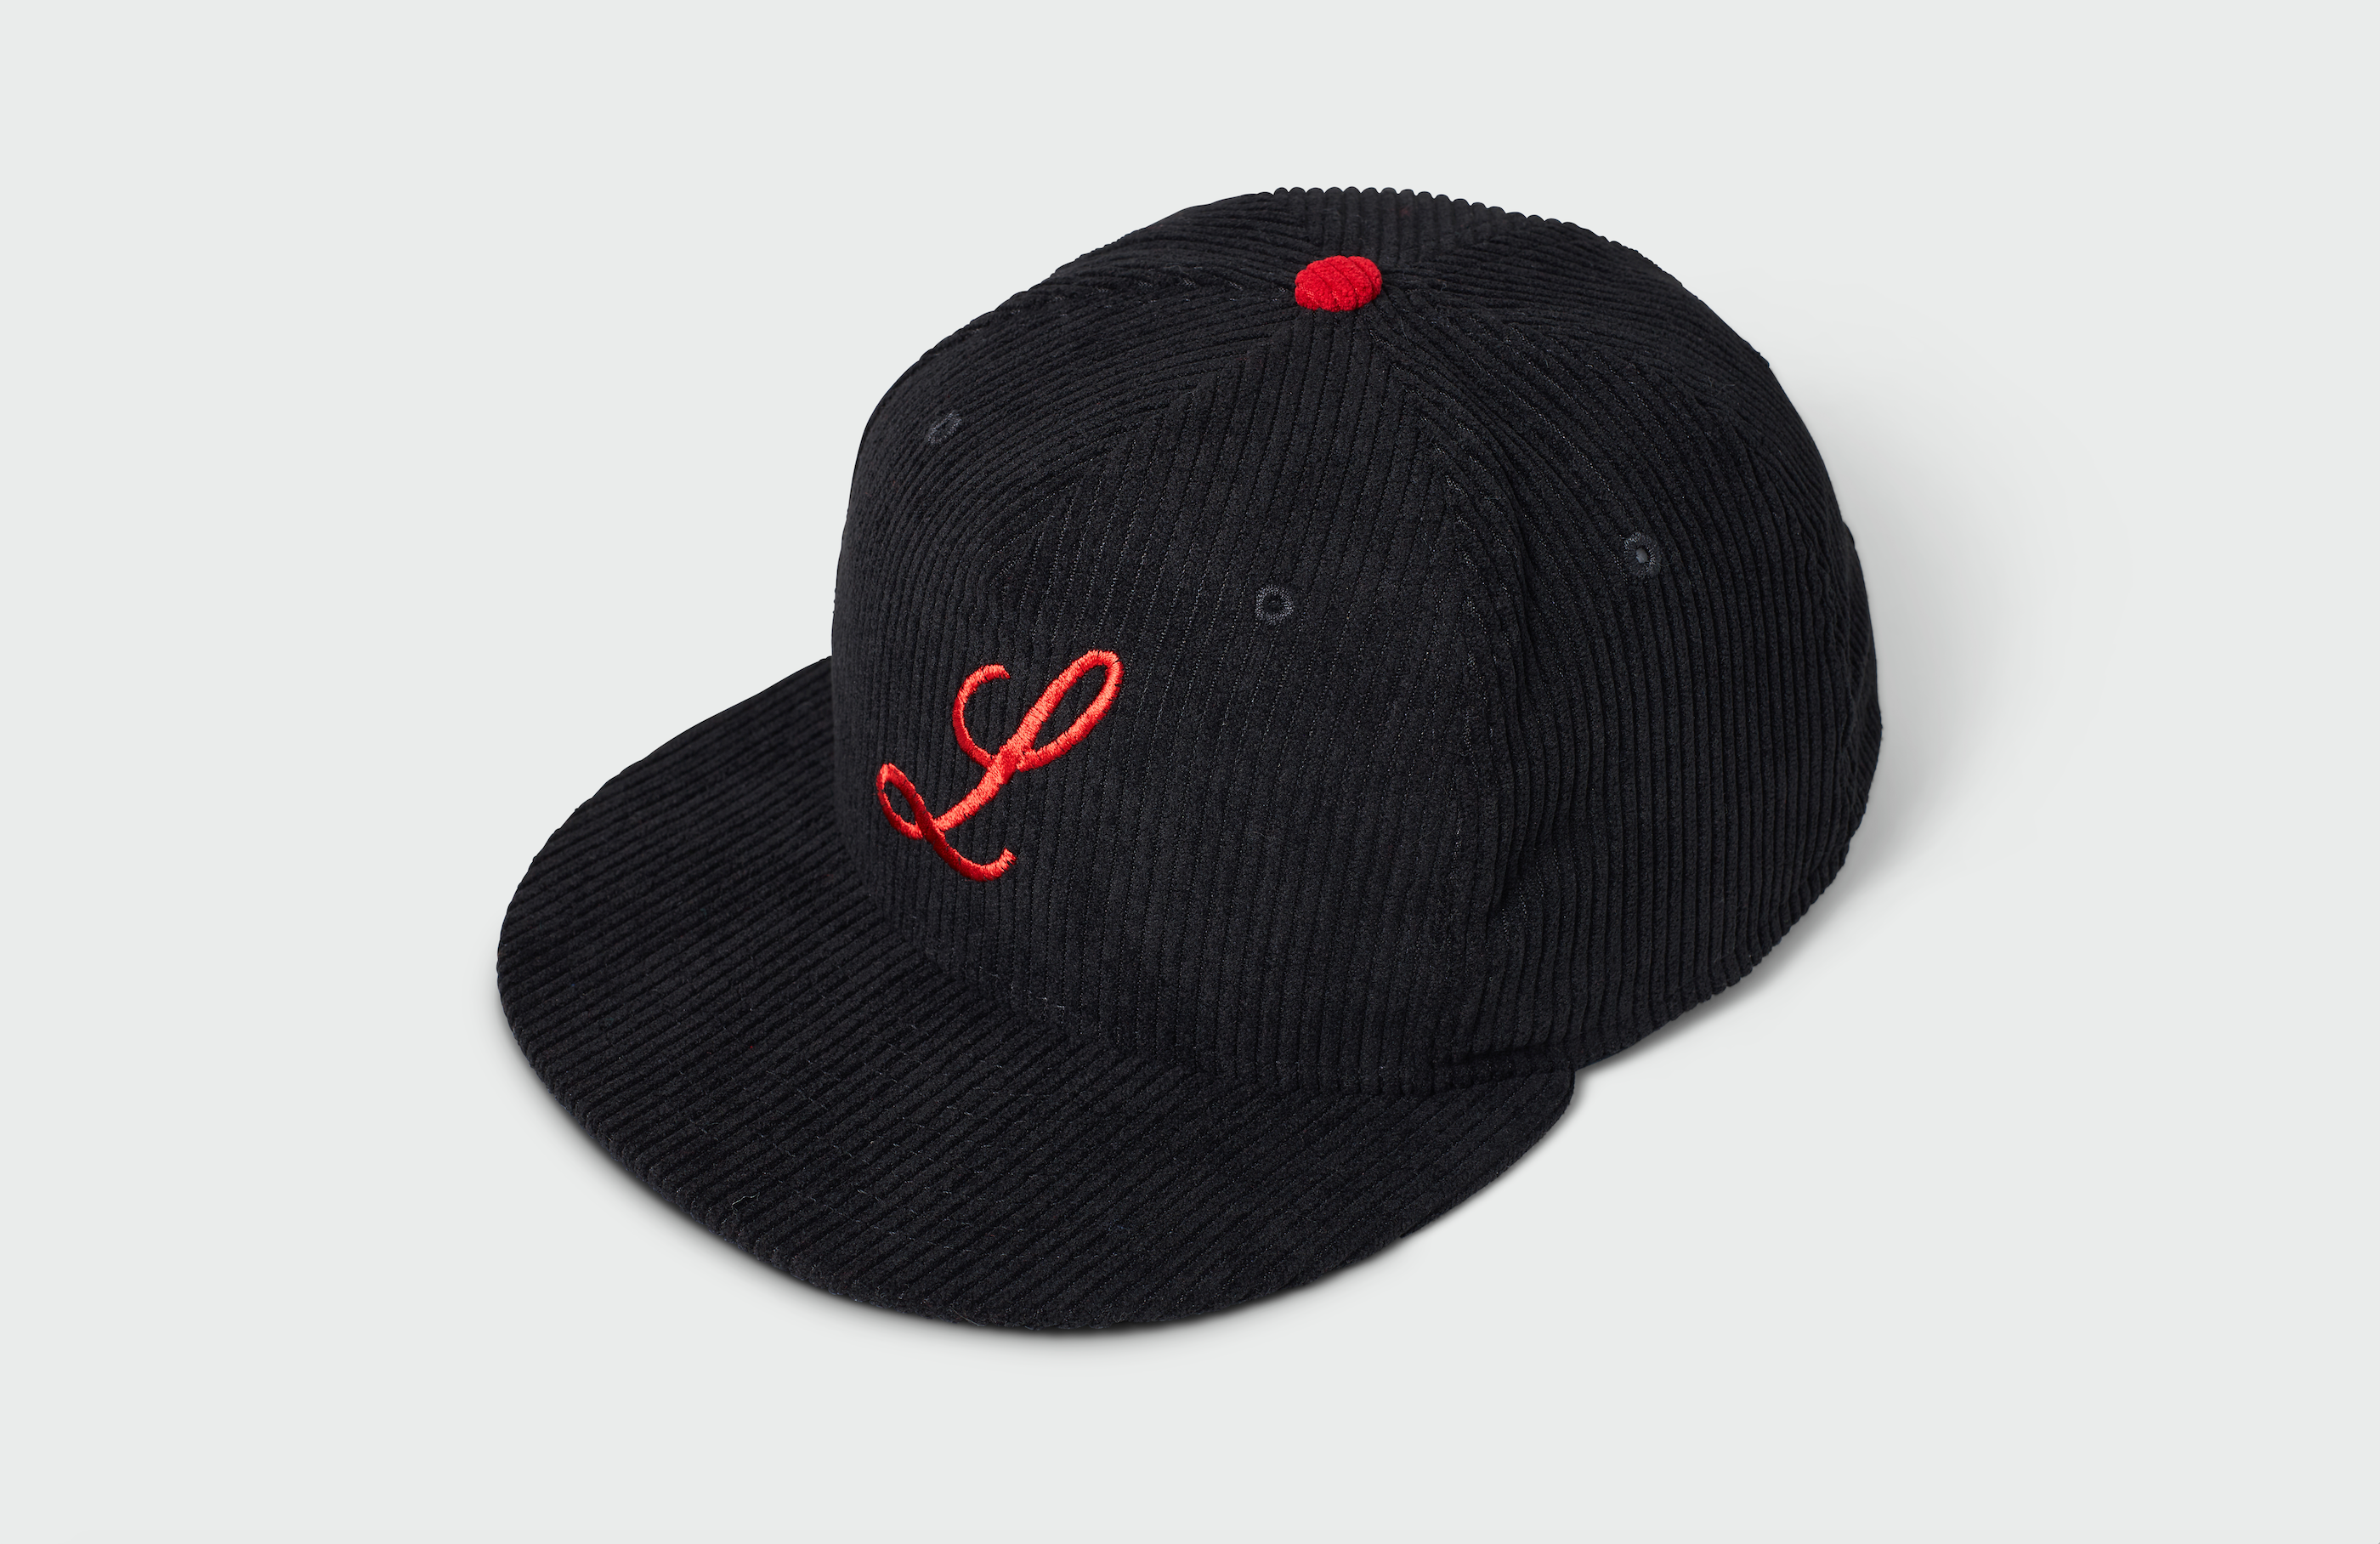 Louisville Black Caps Rings & Crwns Snapback Hat - Black